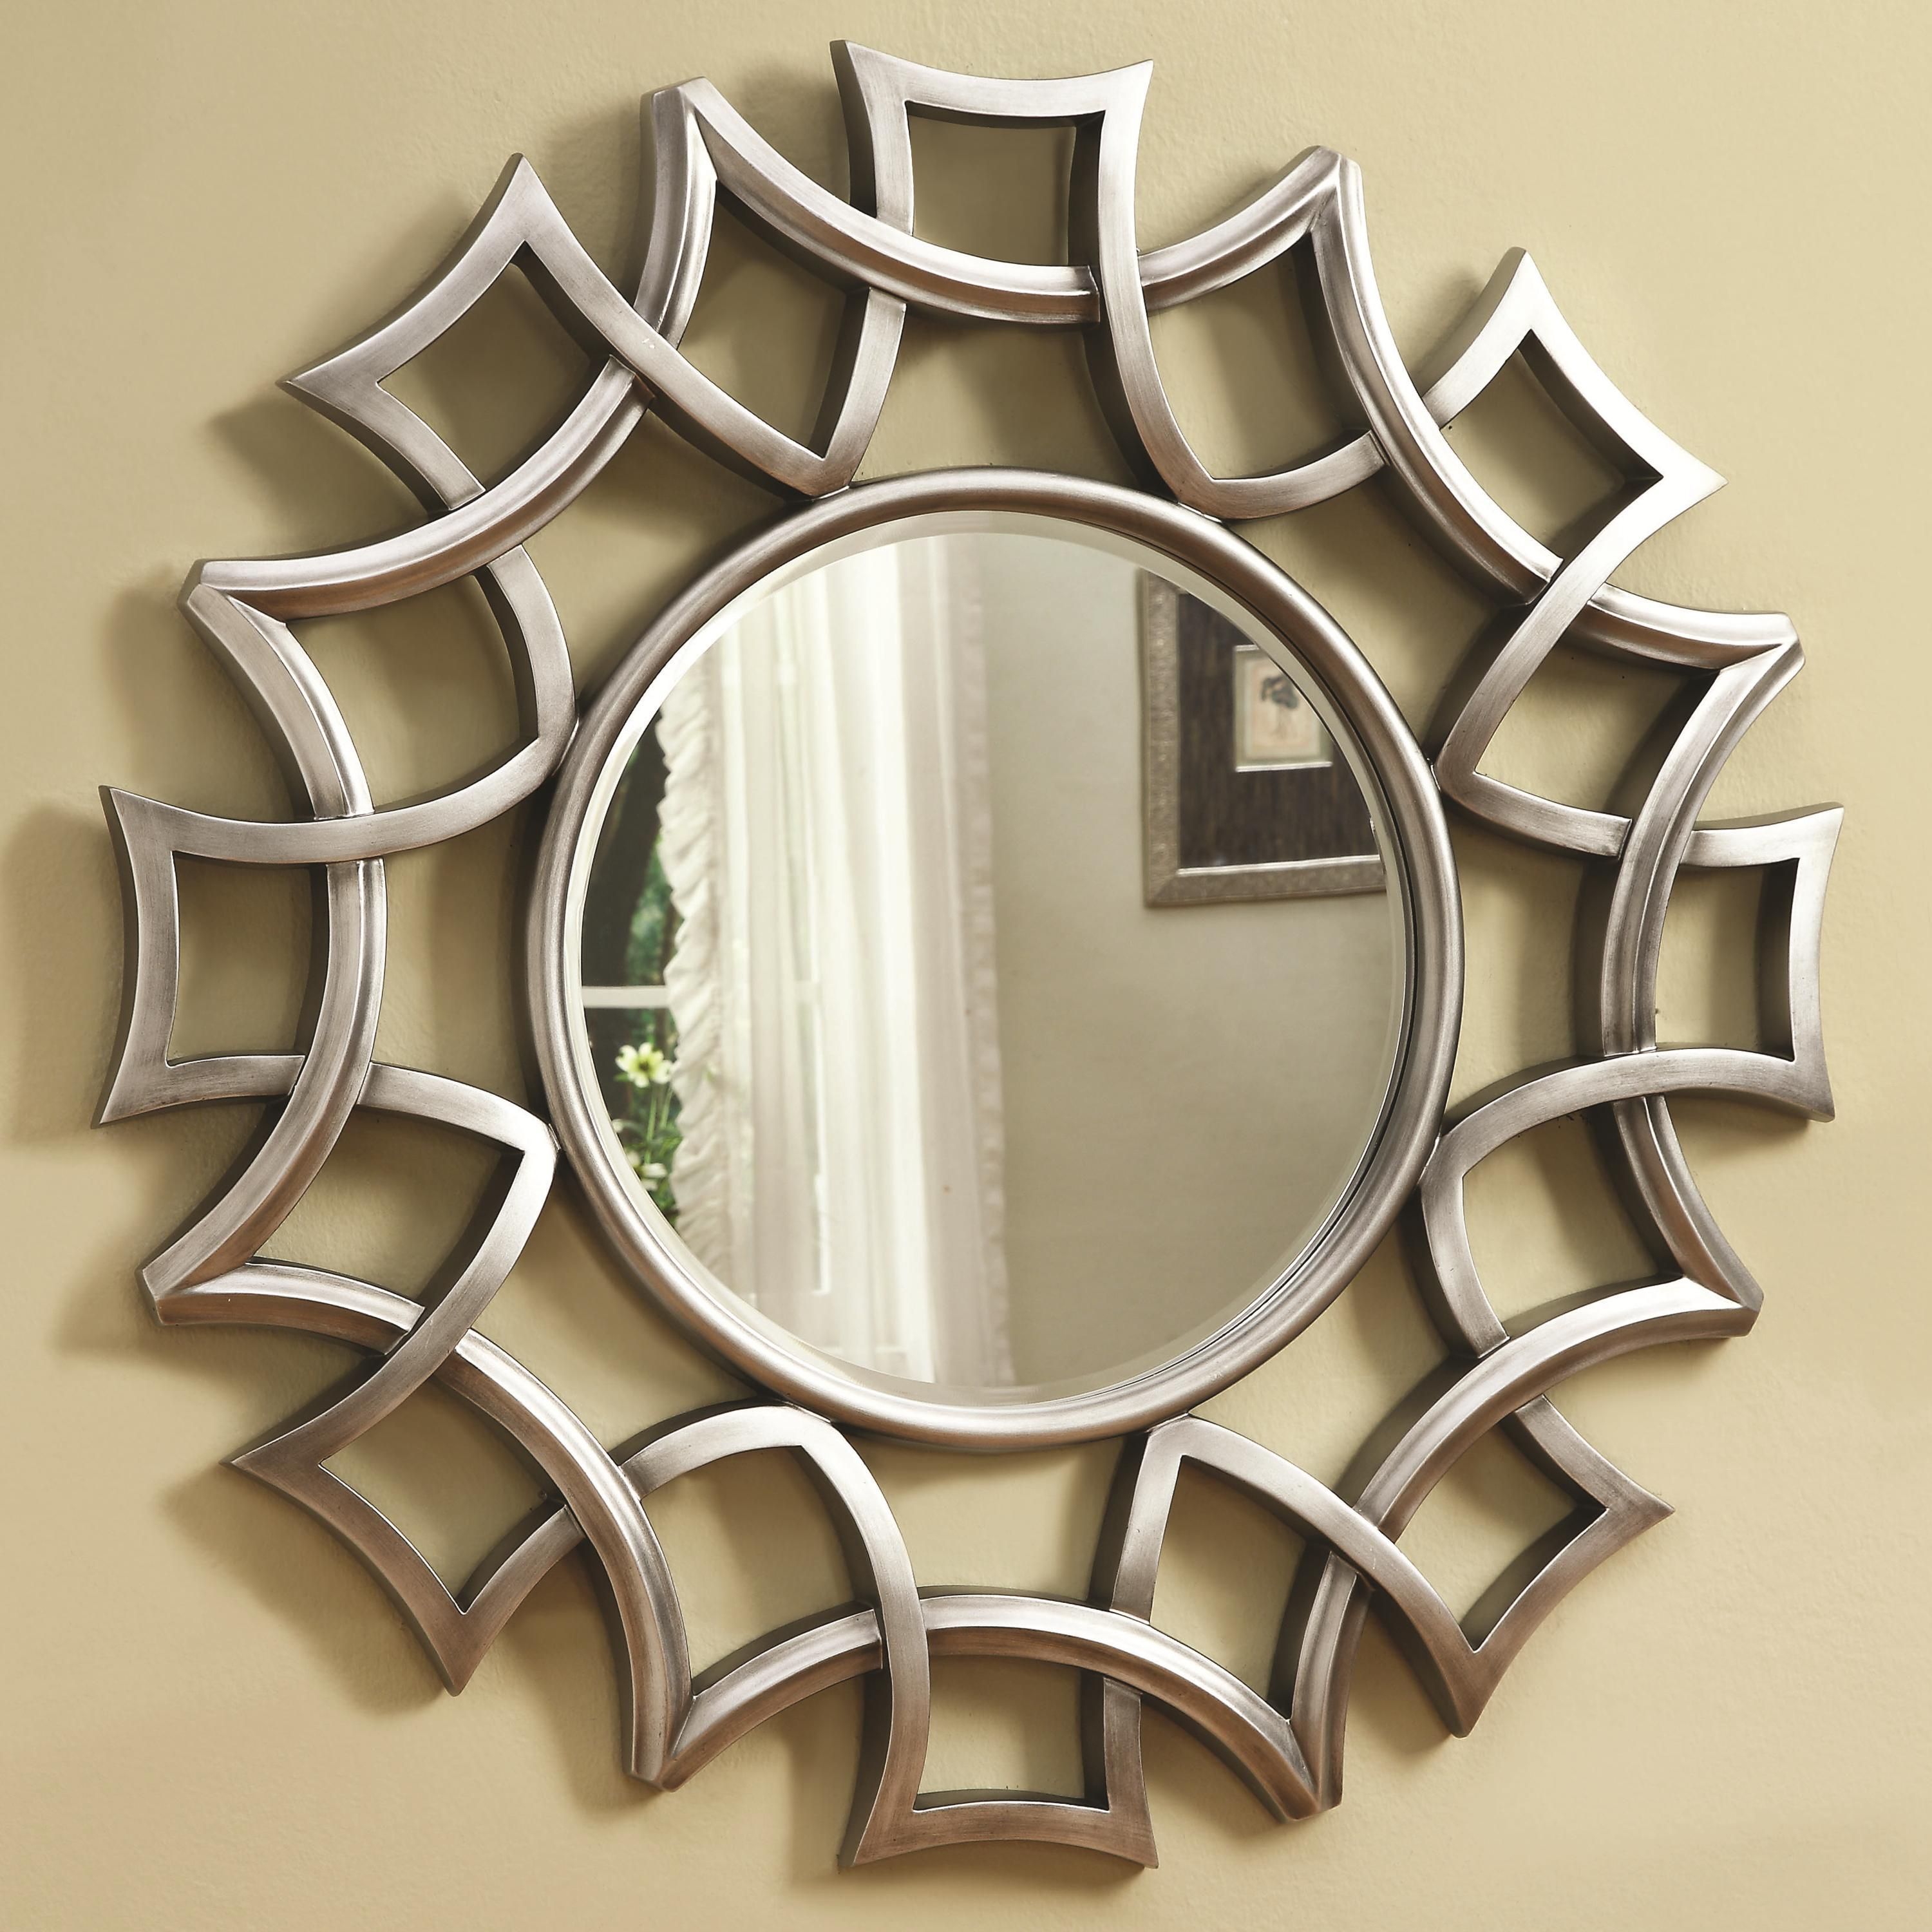 Coaster Accent Mirrors Starburst Mirror In Silver Finish In Silver Frame Accent Mirrors (View 9 of 30)